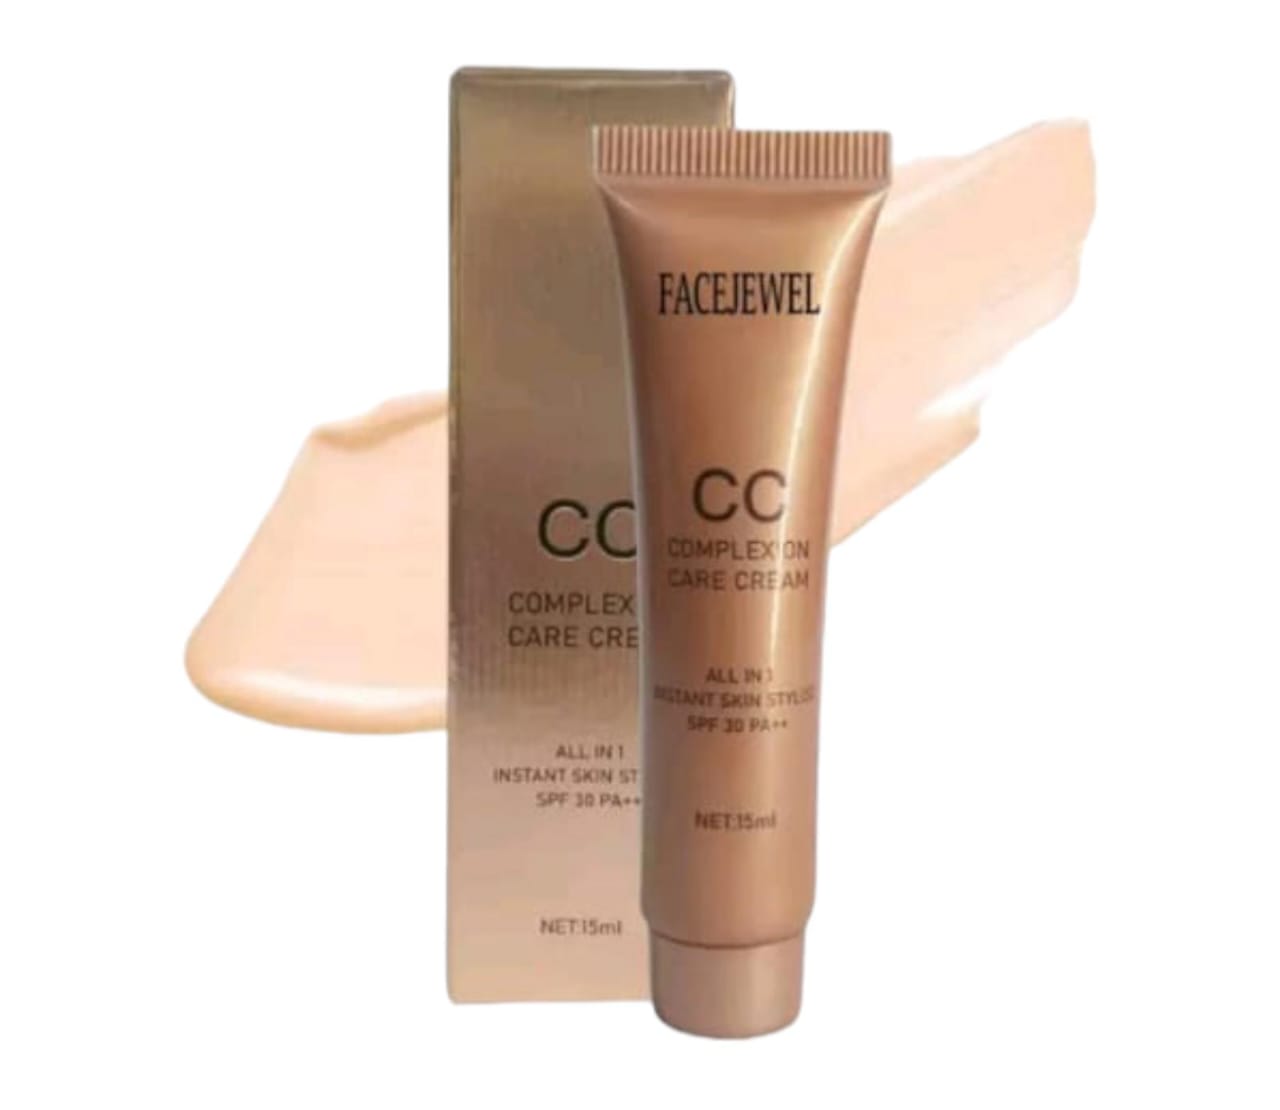 Facejewel CC Complexion Care Cream 